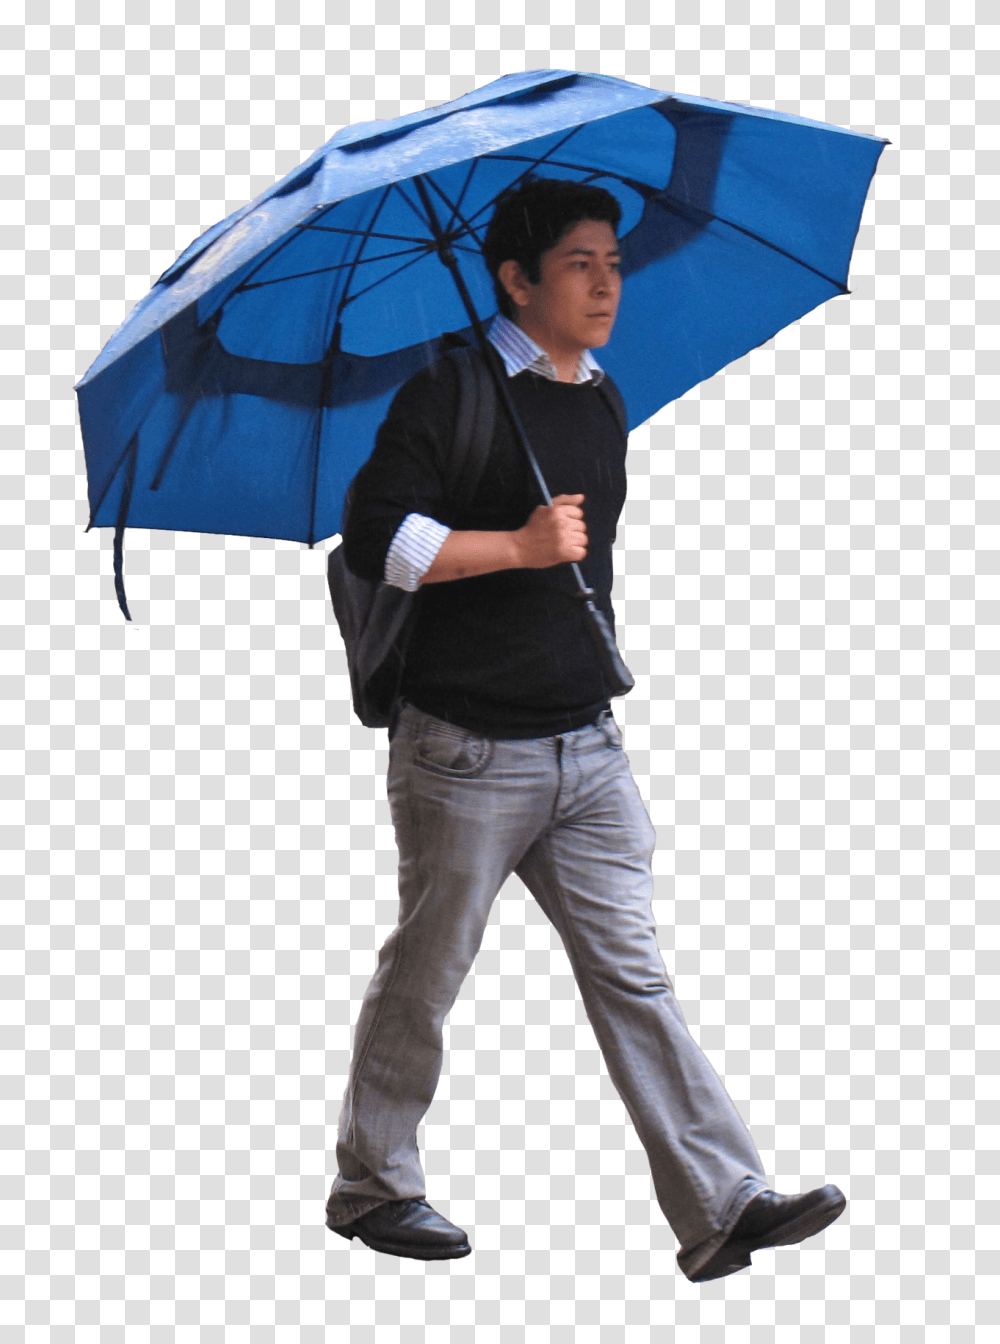 Umbrella, Person, Canopy, Pants Transparent Png